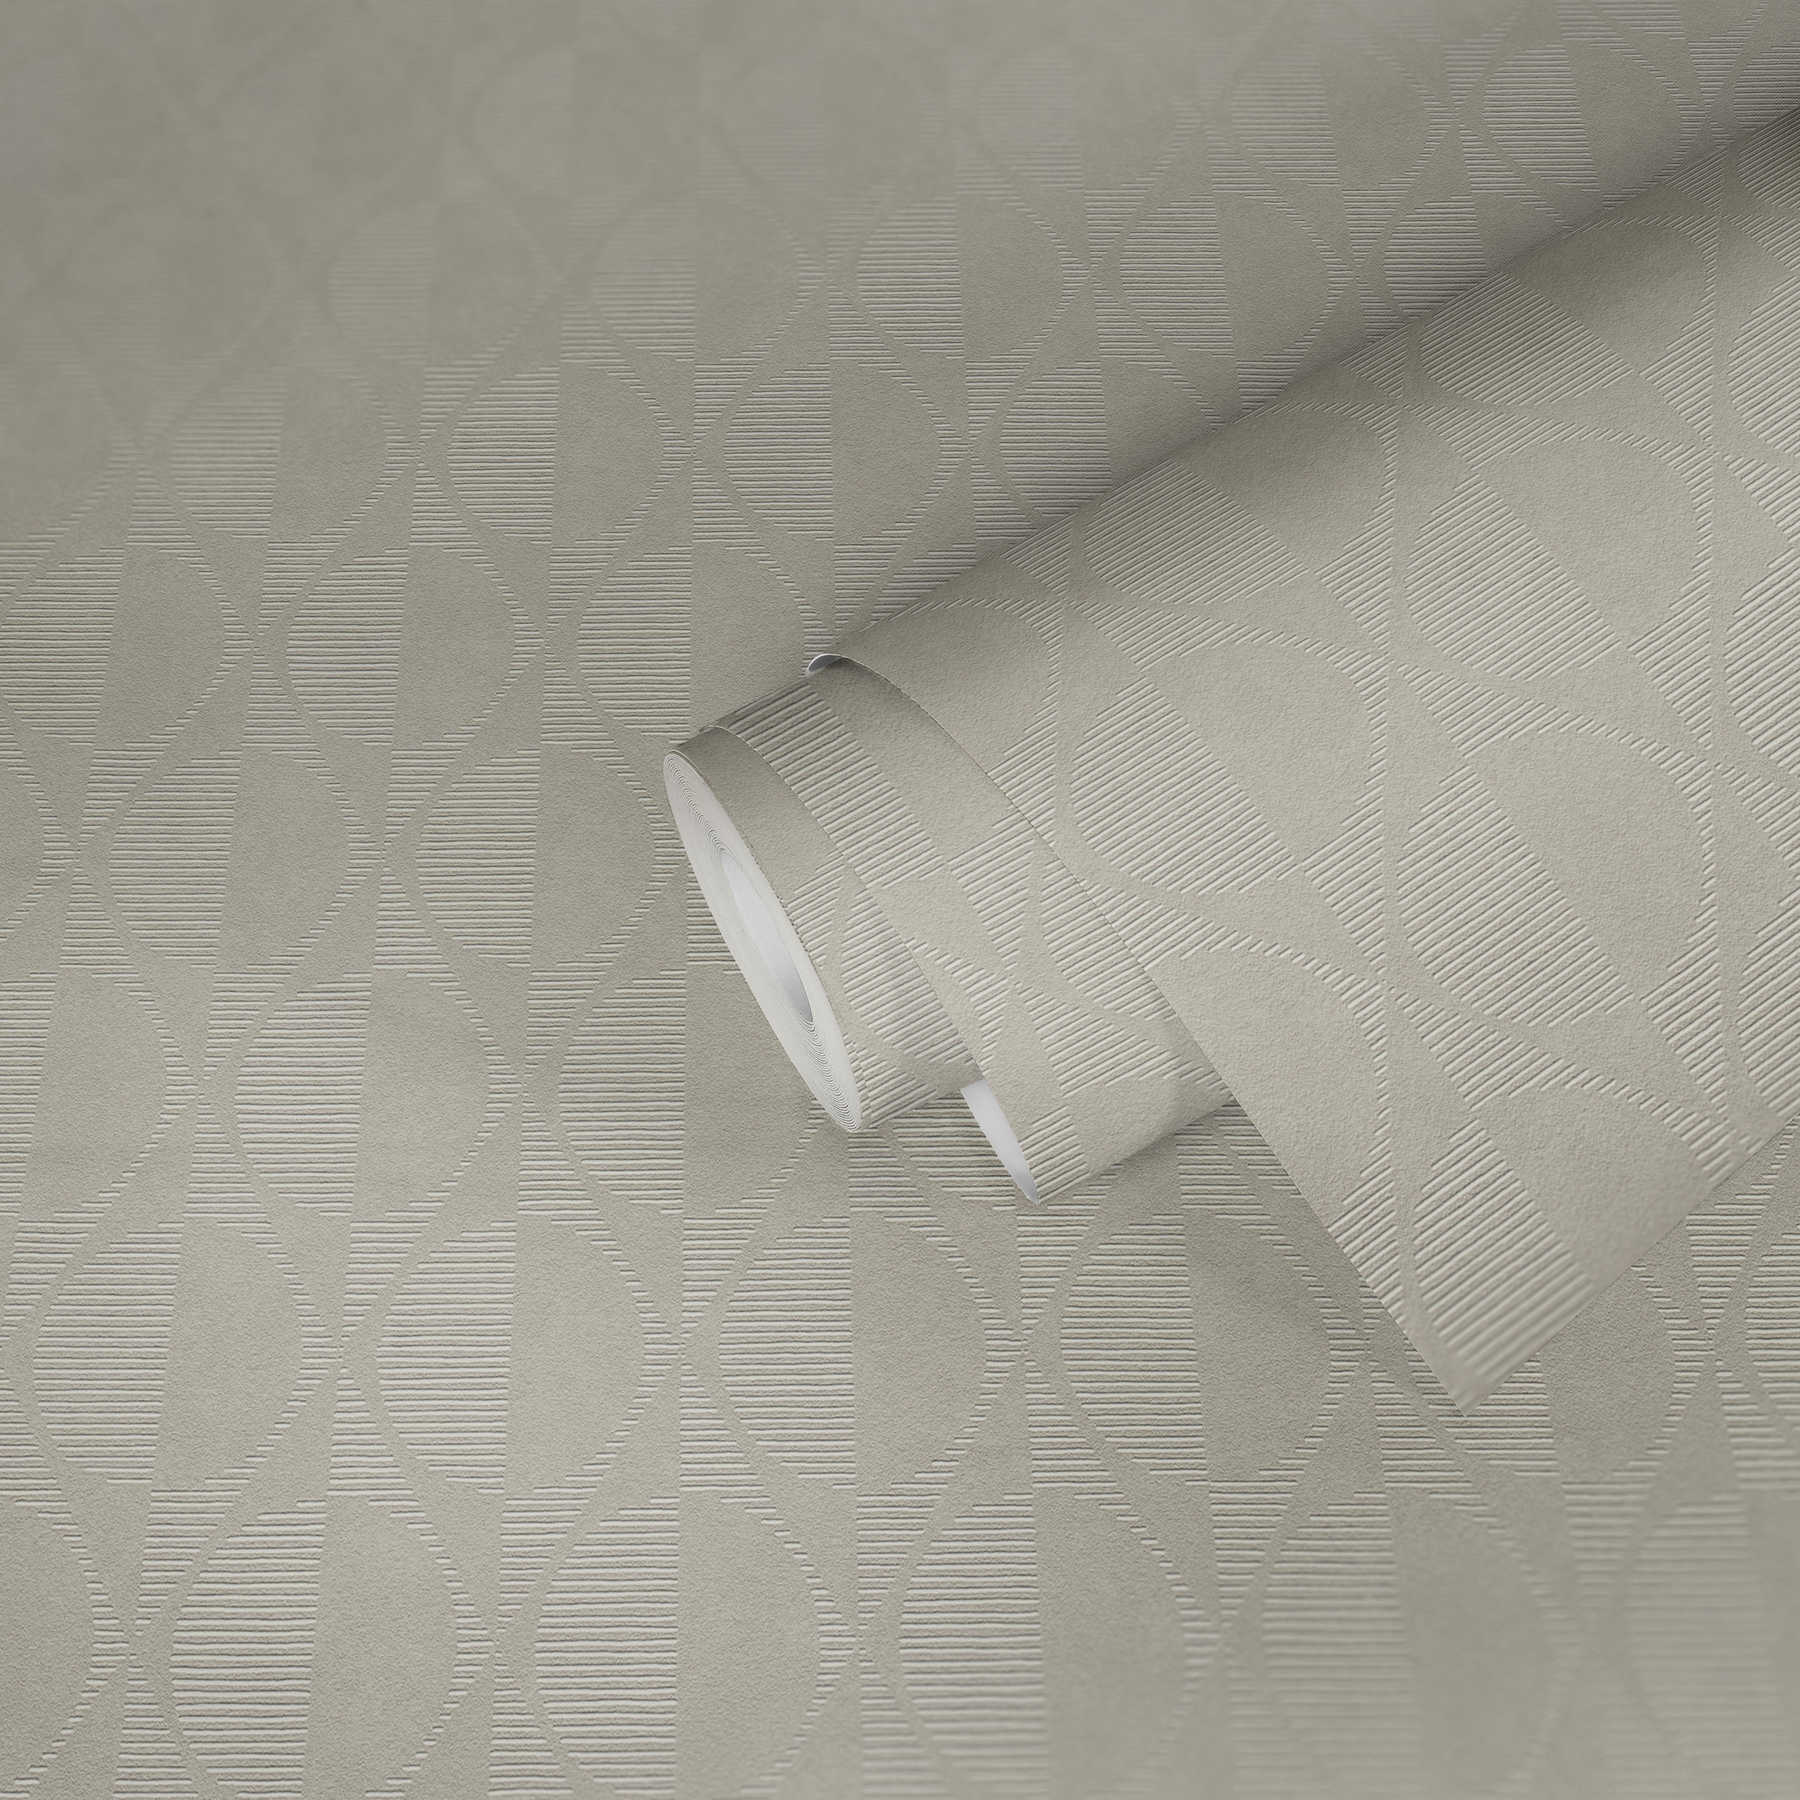             Papier peint rétro avec motif symétrique - beige, gris, crème
        